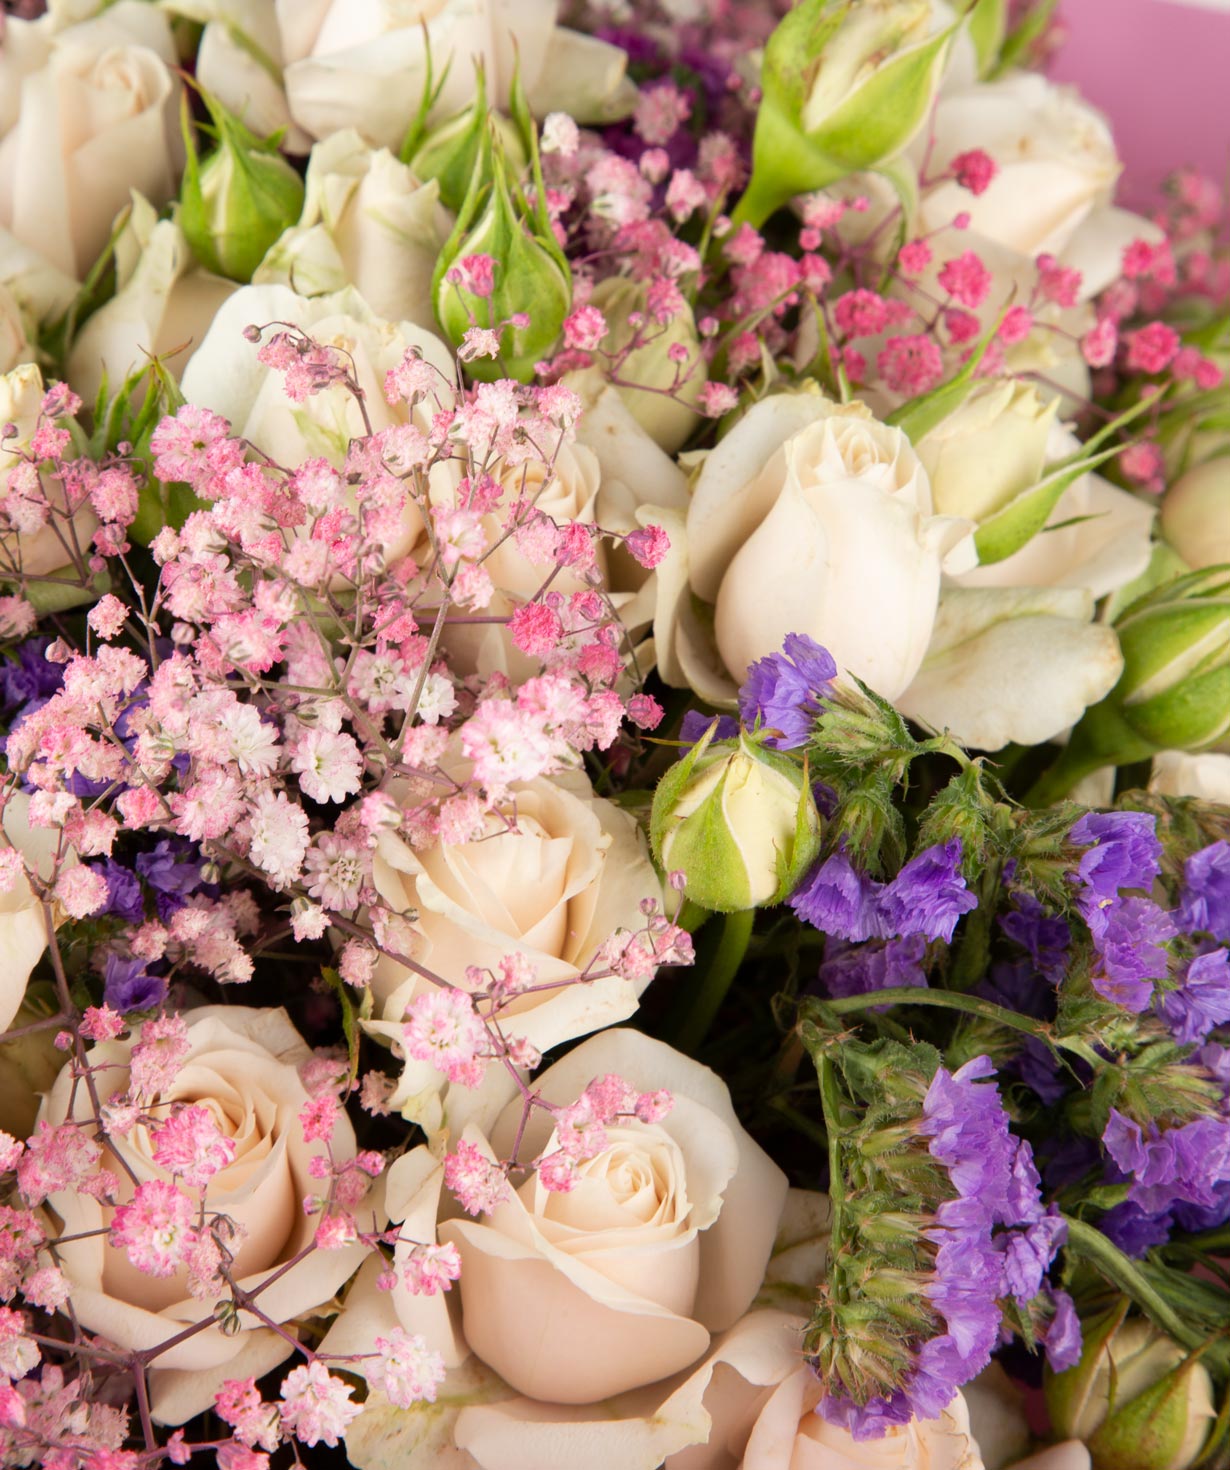 Ծաղկեփունջ «Զվեդրու»  վարդերով, լիմոնիումներով, գիպսոֆլայով